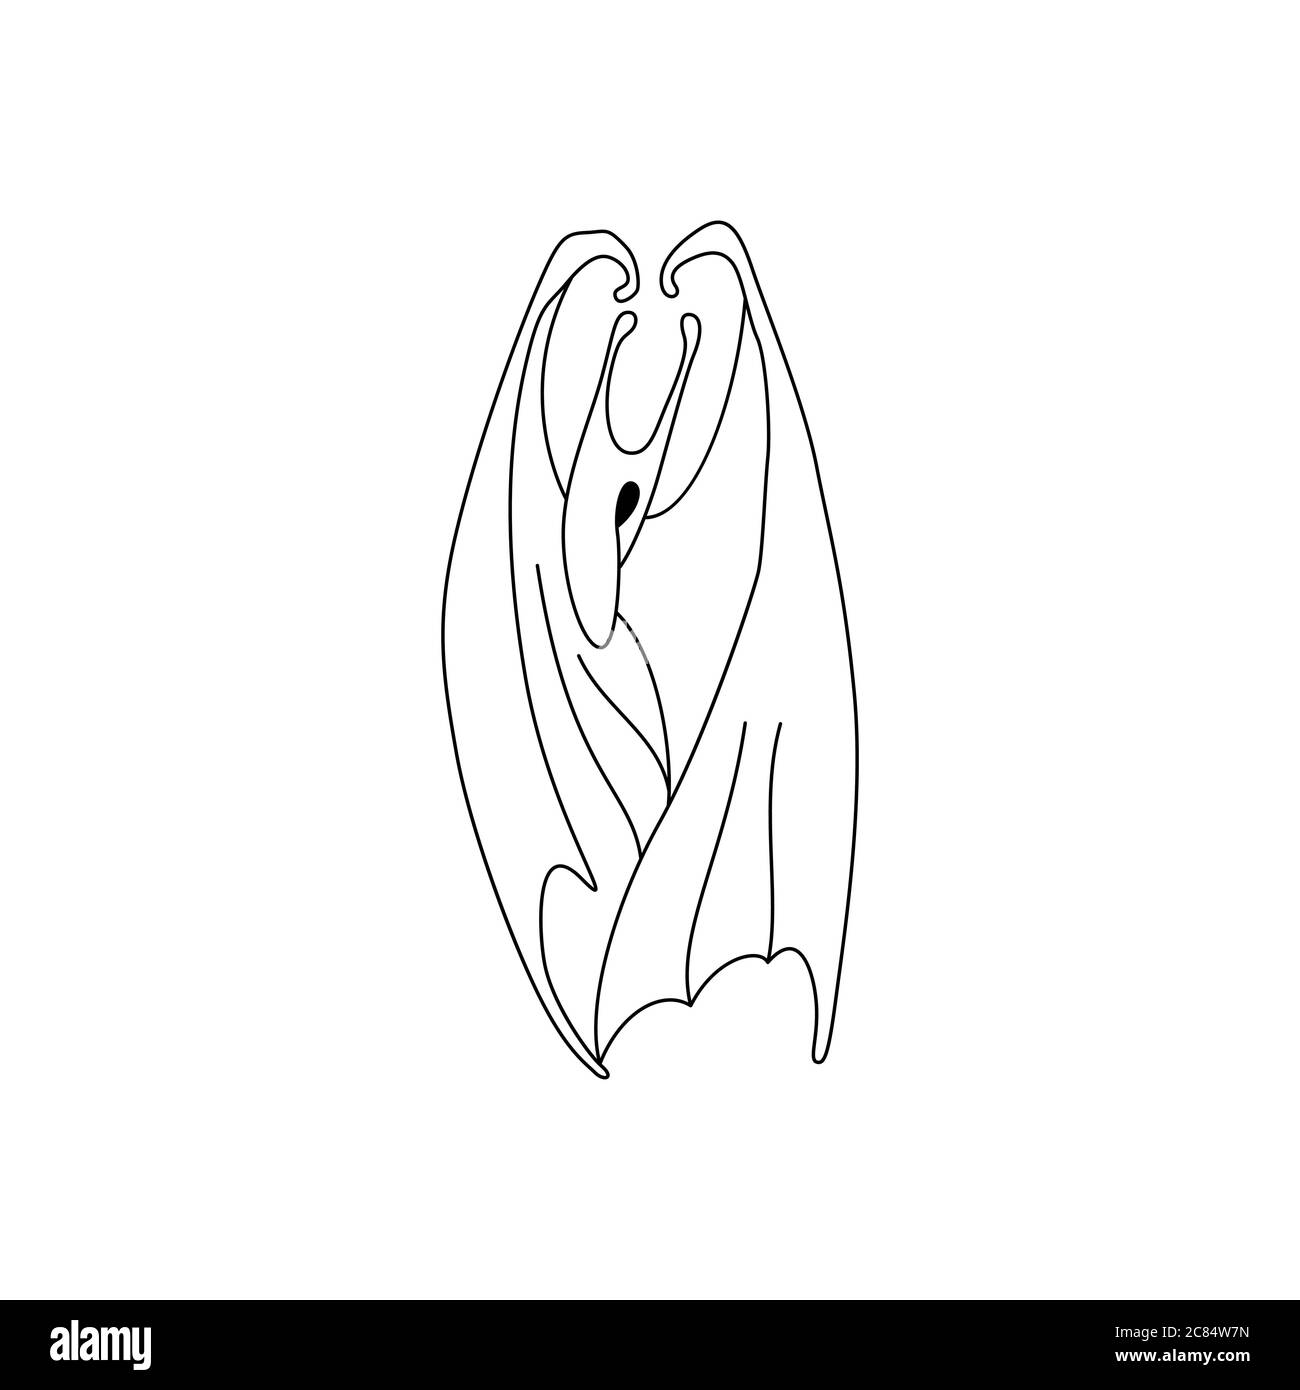 Illustration vectorielle d'un animal imaginaire avec des ailes. Chauve-souris de dessin animé Dessin au trait Illustration de Vecteur